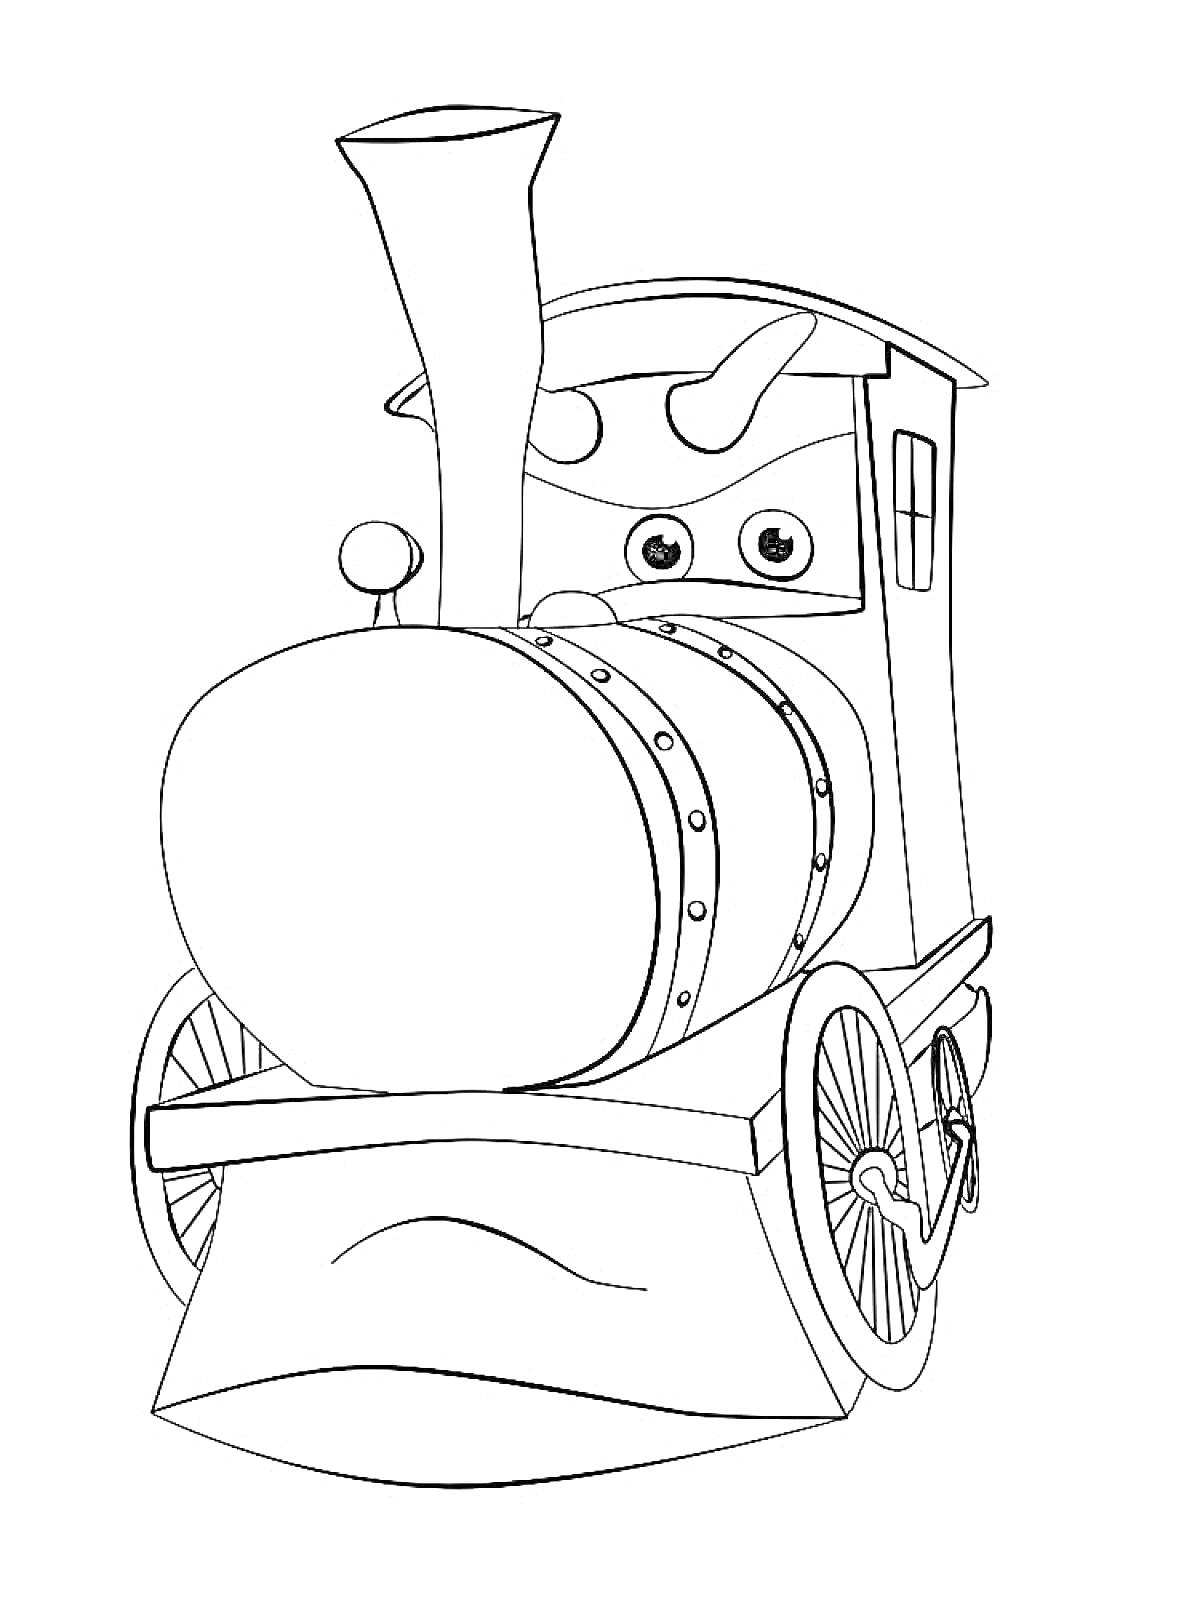 Раскраска Паровозик Тишка в анфас с дымоходом, колесами и окном